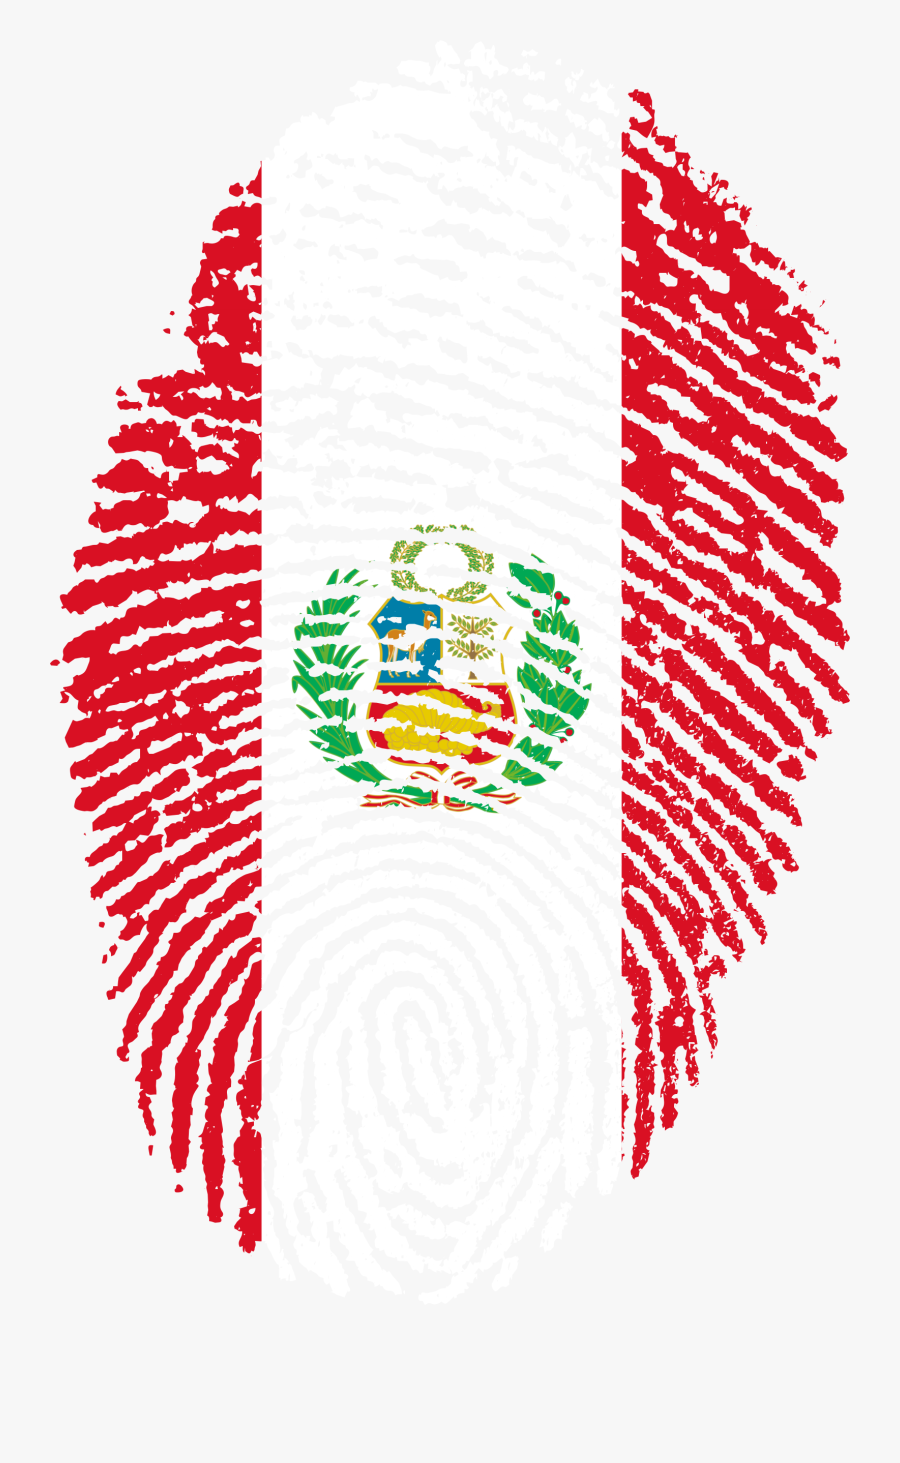 Clipart Peru Flag Map - Peru Png, Transparent Clipart